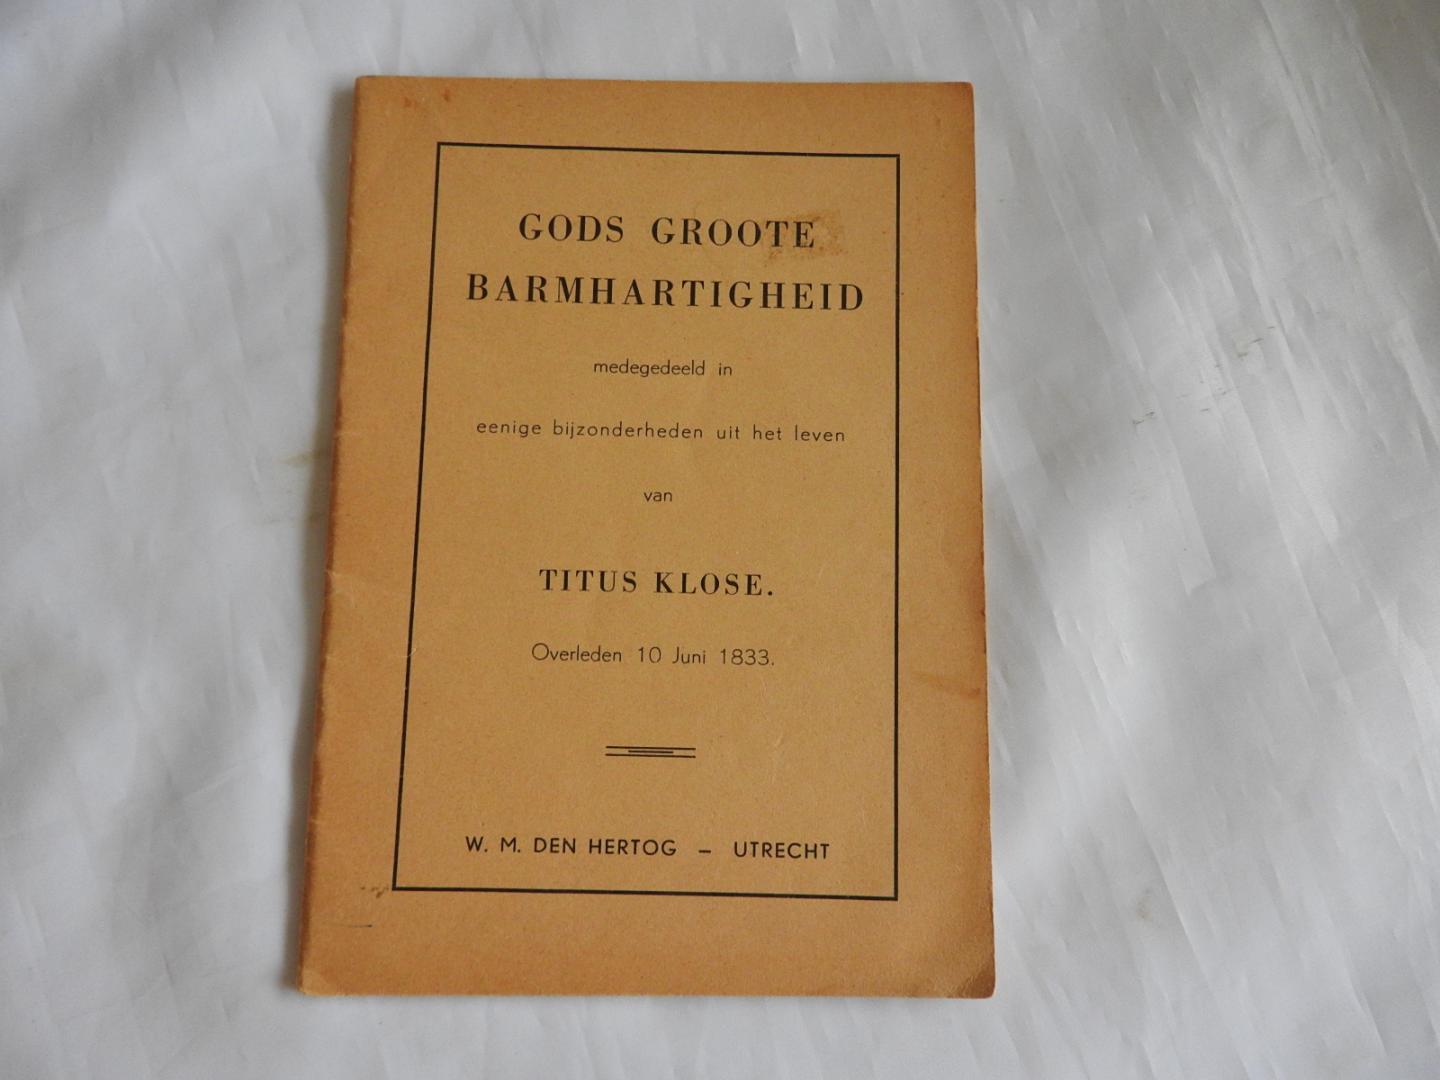 Titus Klose - Gods groote barmhartigheid medegedeeld in eenige bijzonderheden uit het leven van Titus Klose --- Overleden 10 Juni 1833